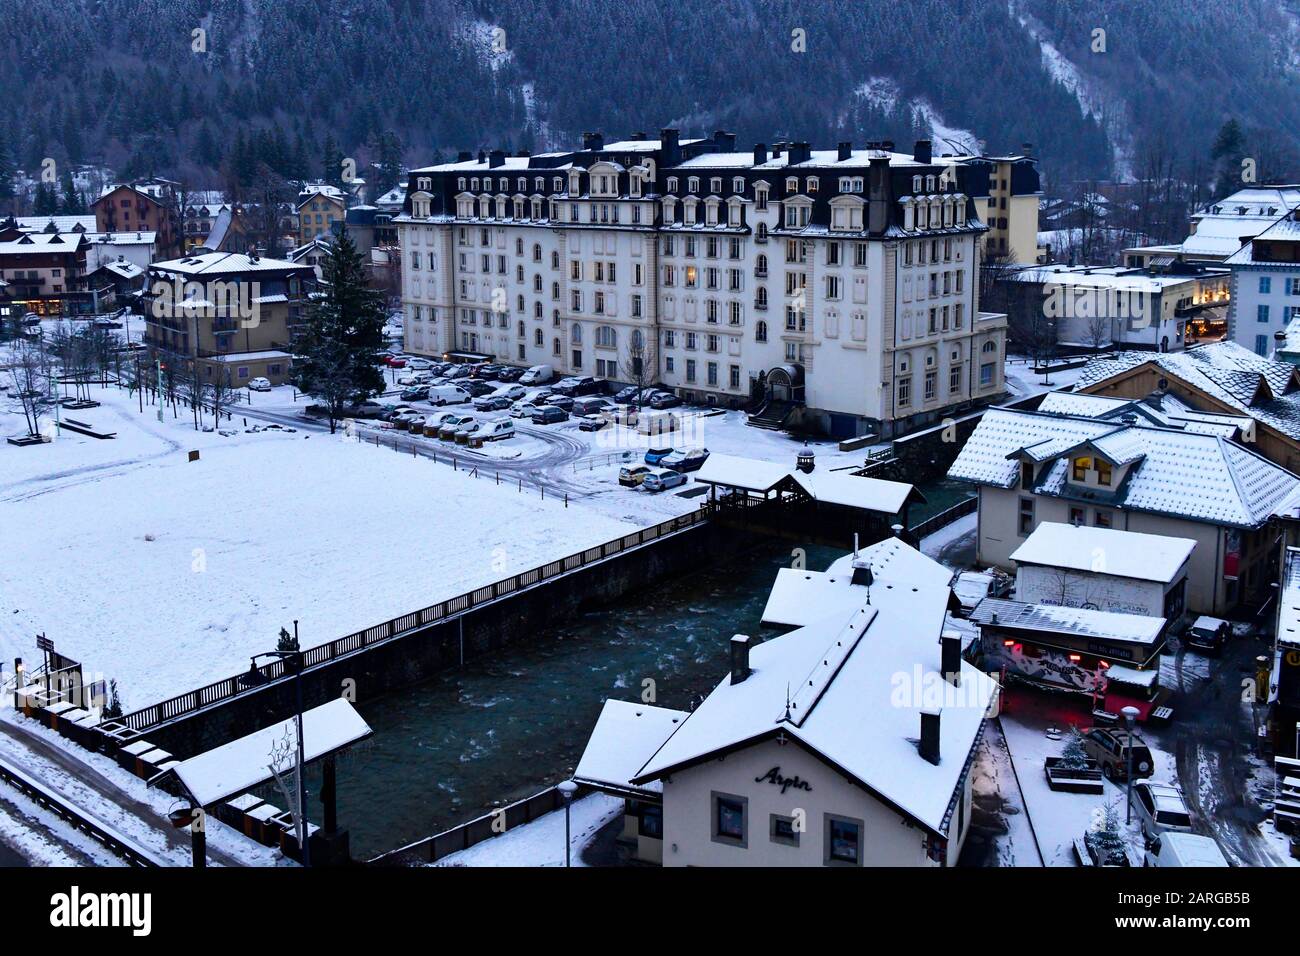 Musée alpin Belle Epoque installé dans le vieux Chamonix, Haute-Savoie, Alpes françaises, France, Europe. Banque D'Images